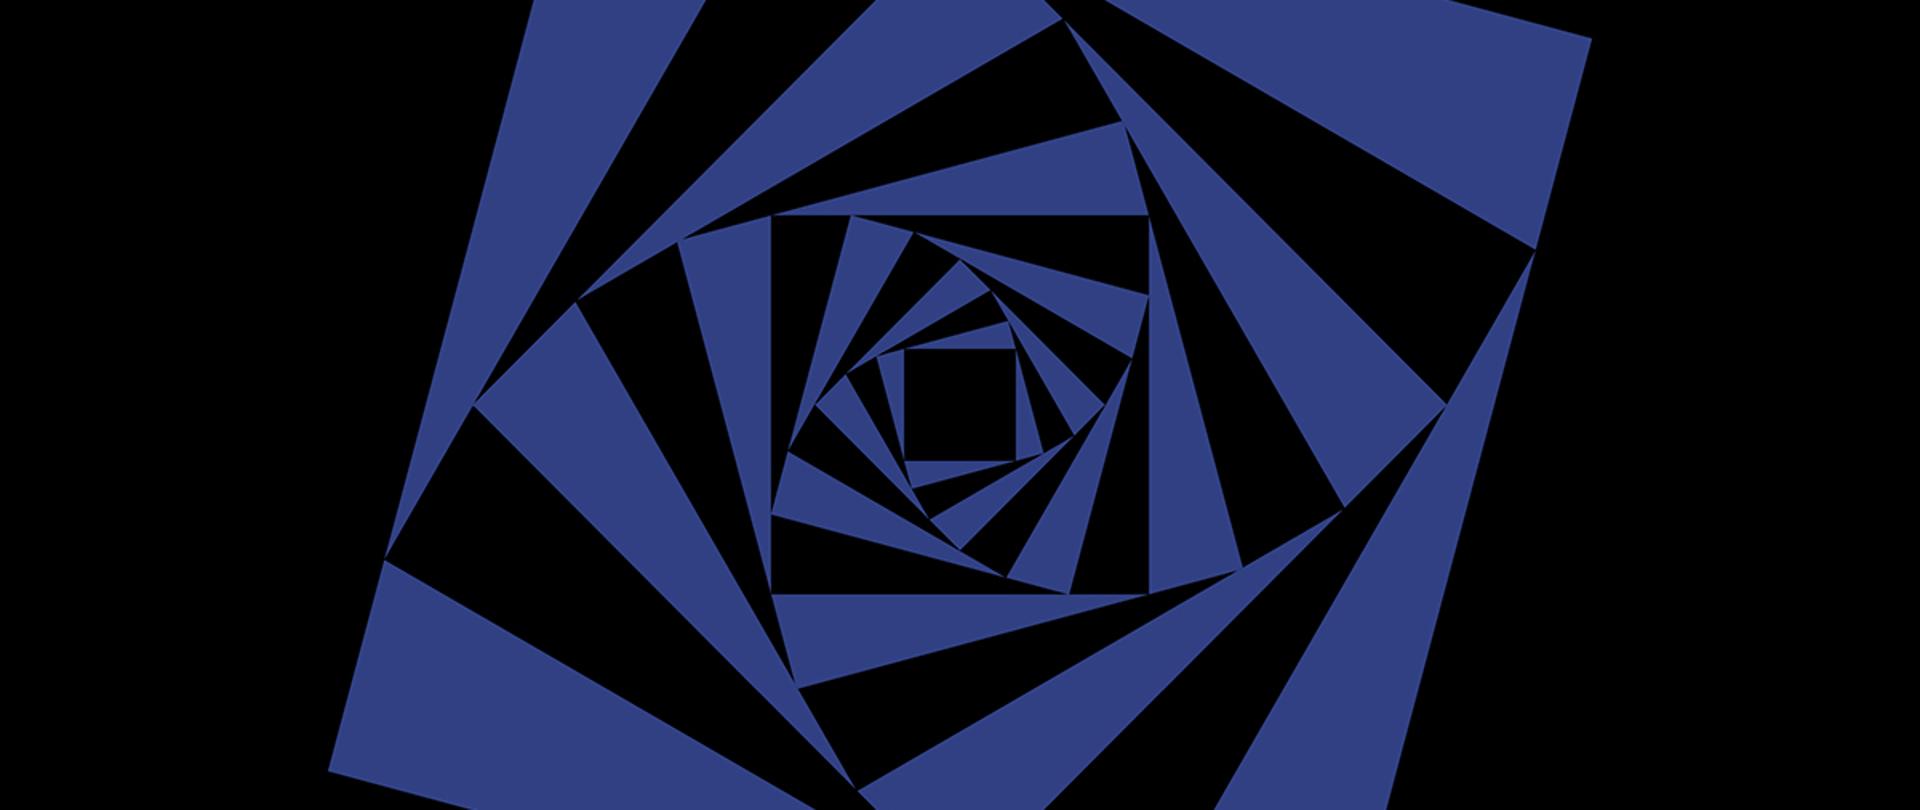 Niebieski kwadrat w centralnej części na czarnym tle. W nim kolejne kwadraty naprzemiennie czarne i niebieskie tworzące iluzjonistyczny tunel.